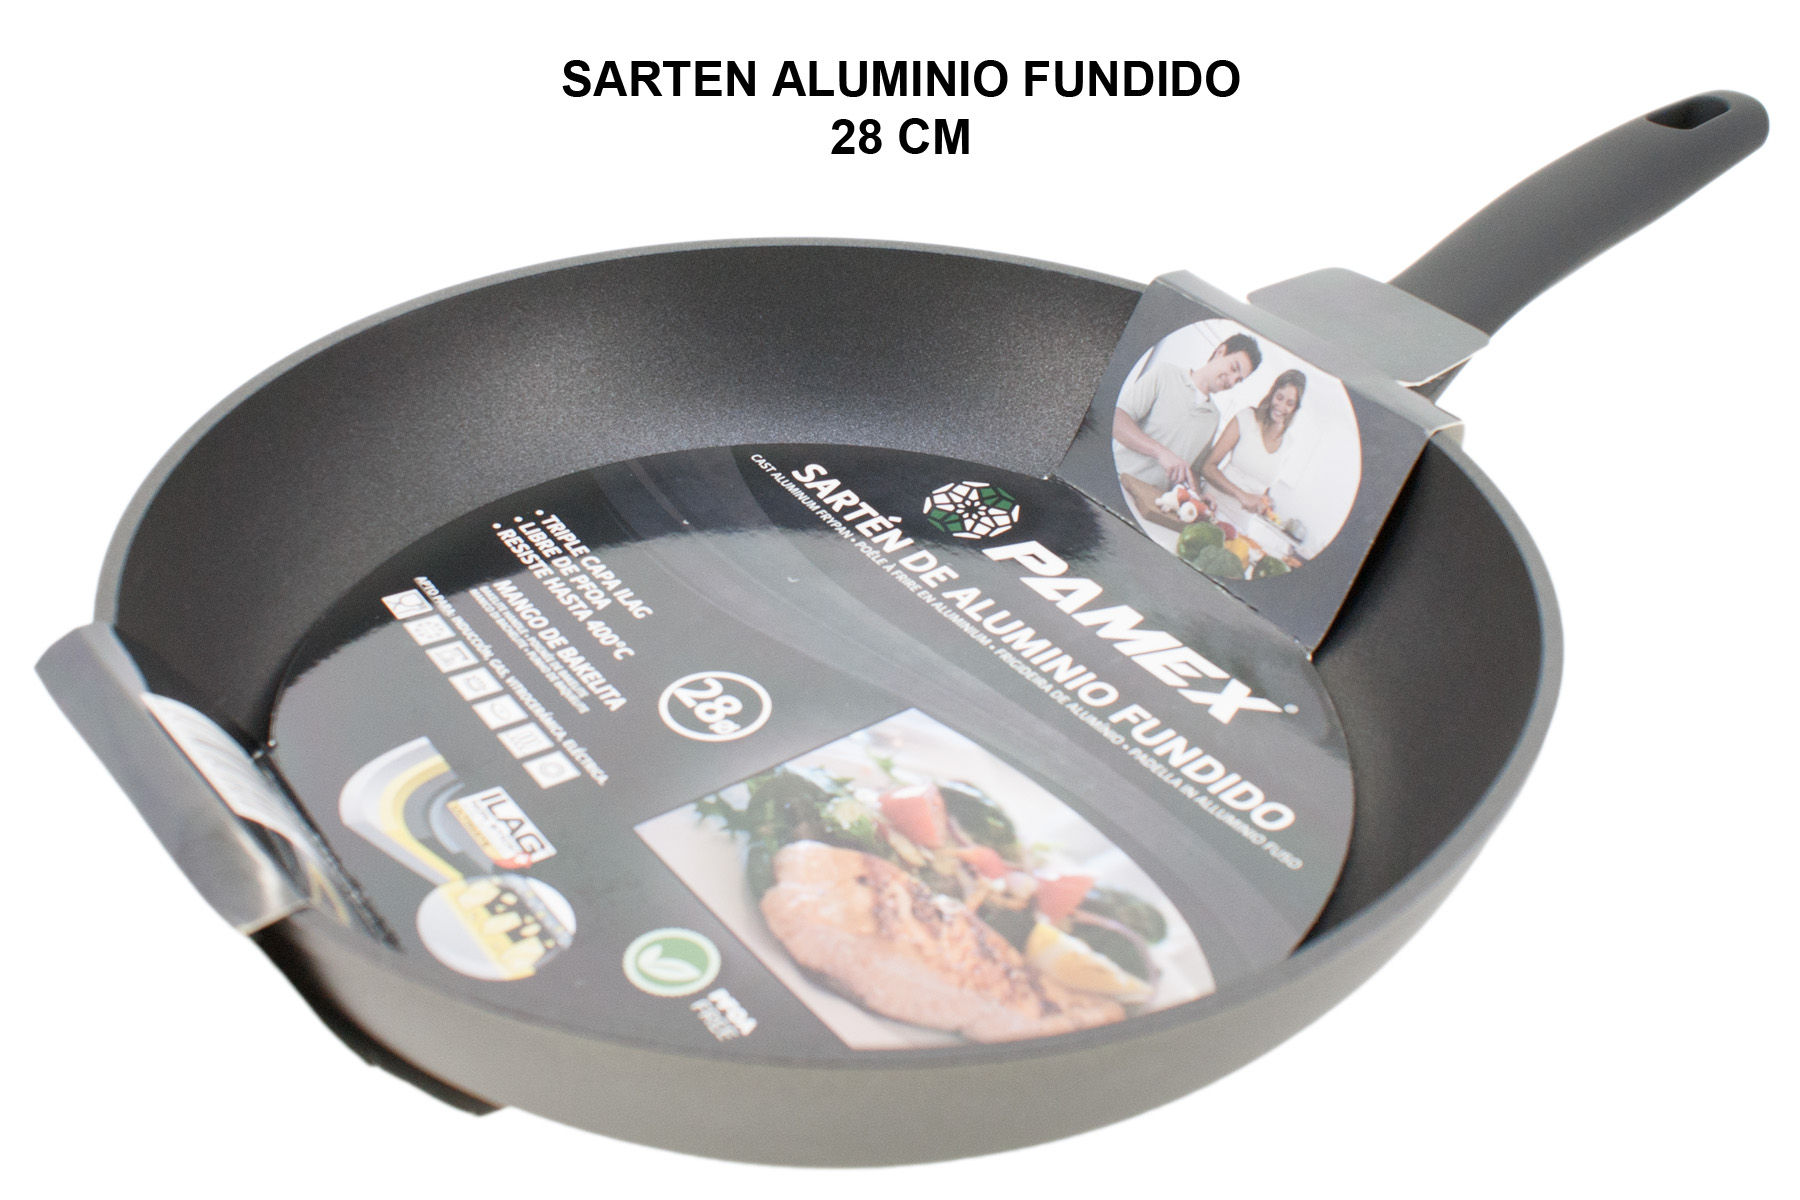 SARTEN ALUMINIO FUNDIDO FULL INDUCTION 28 CM